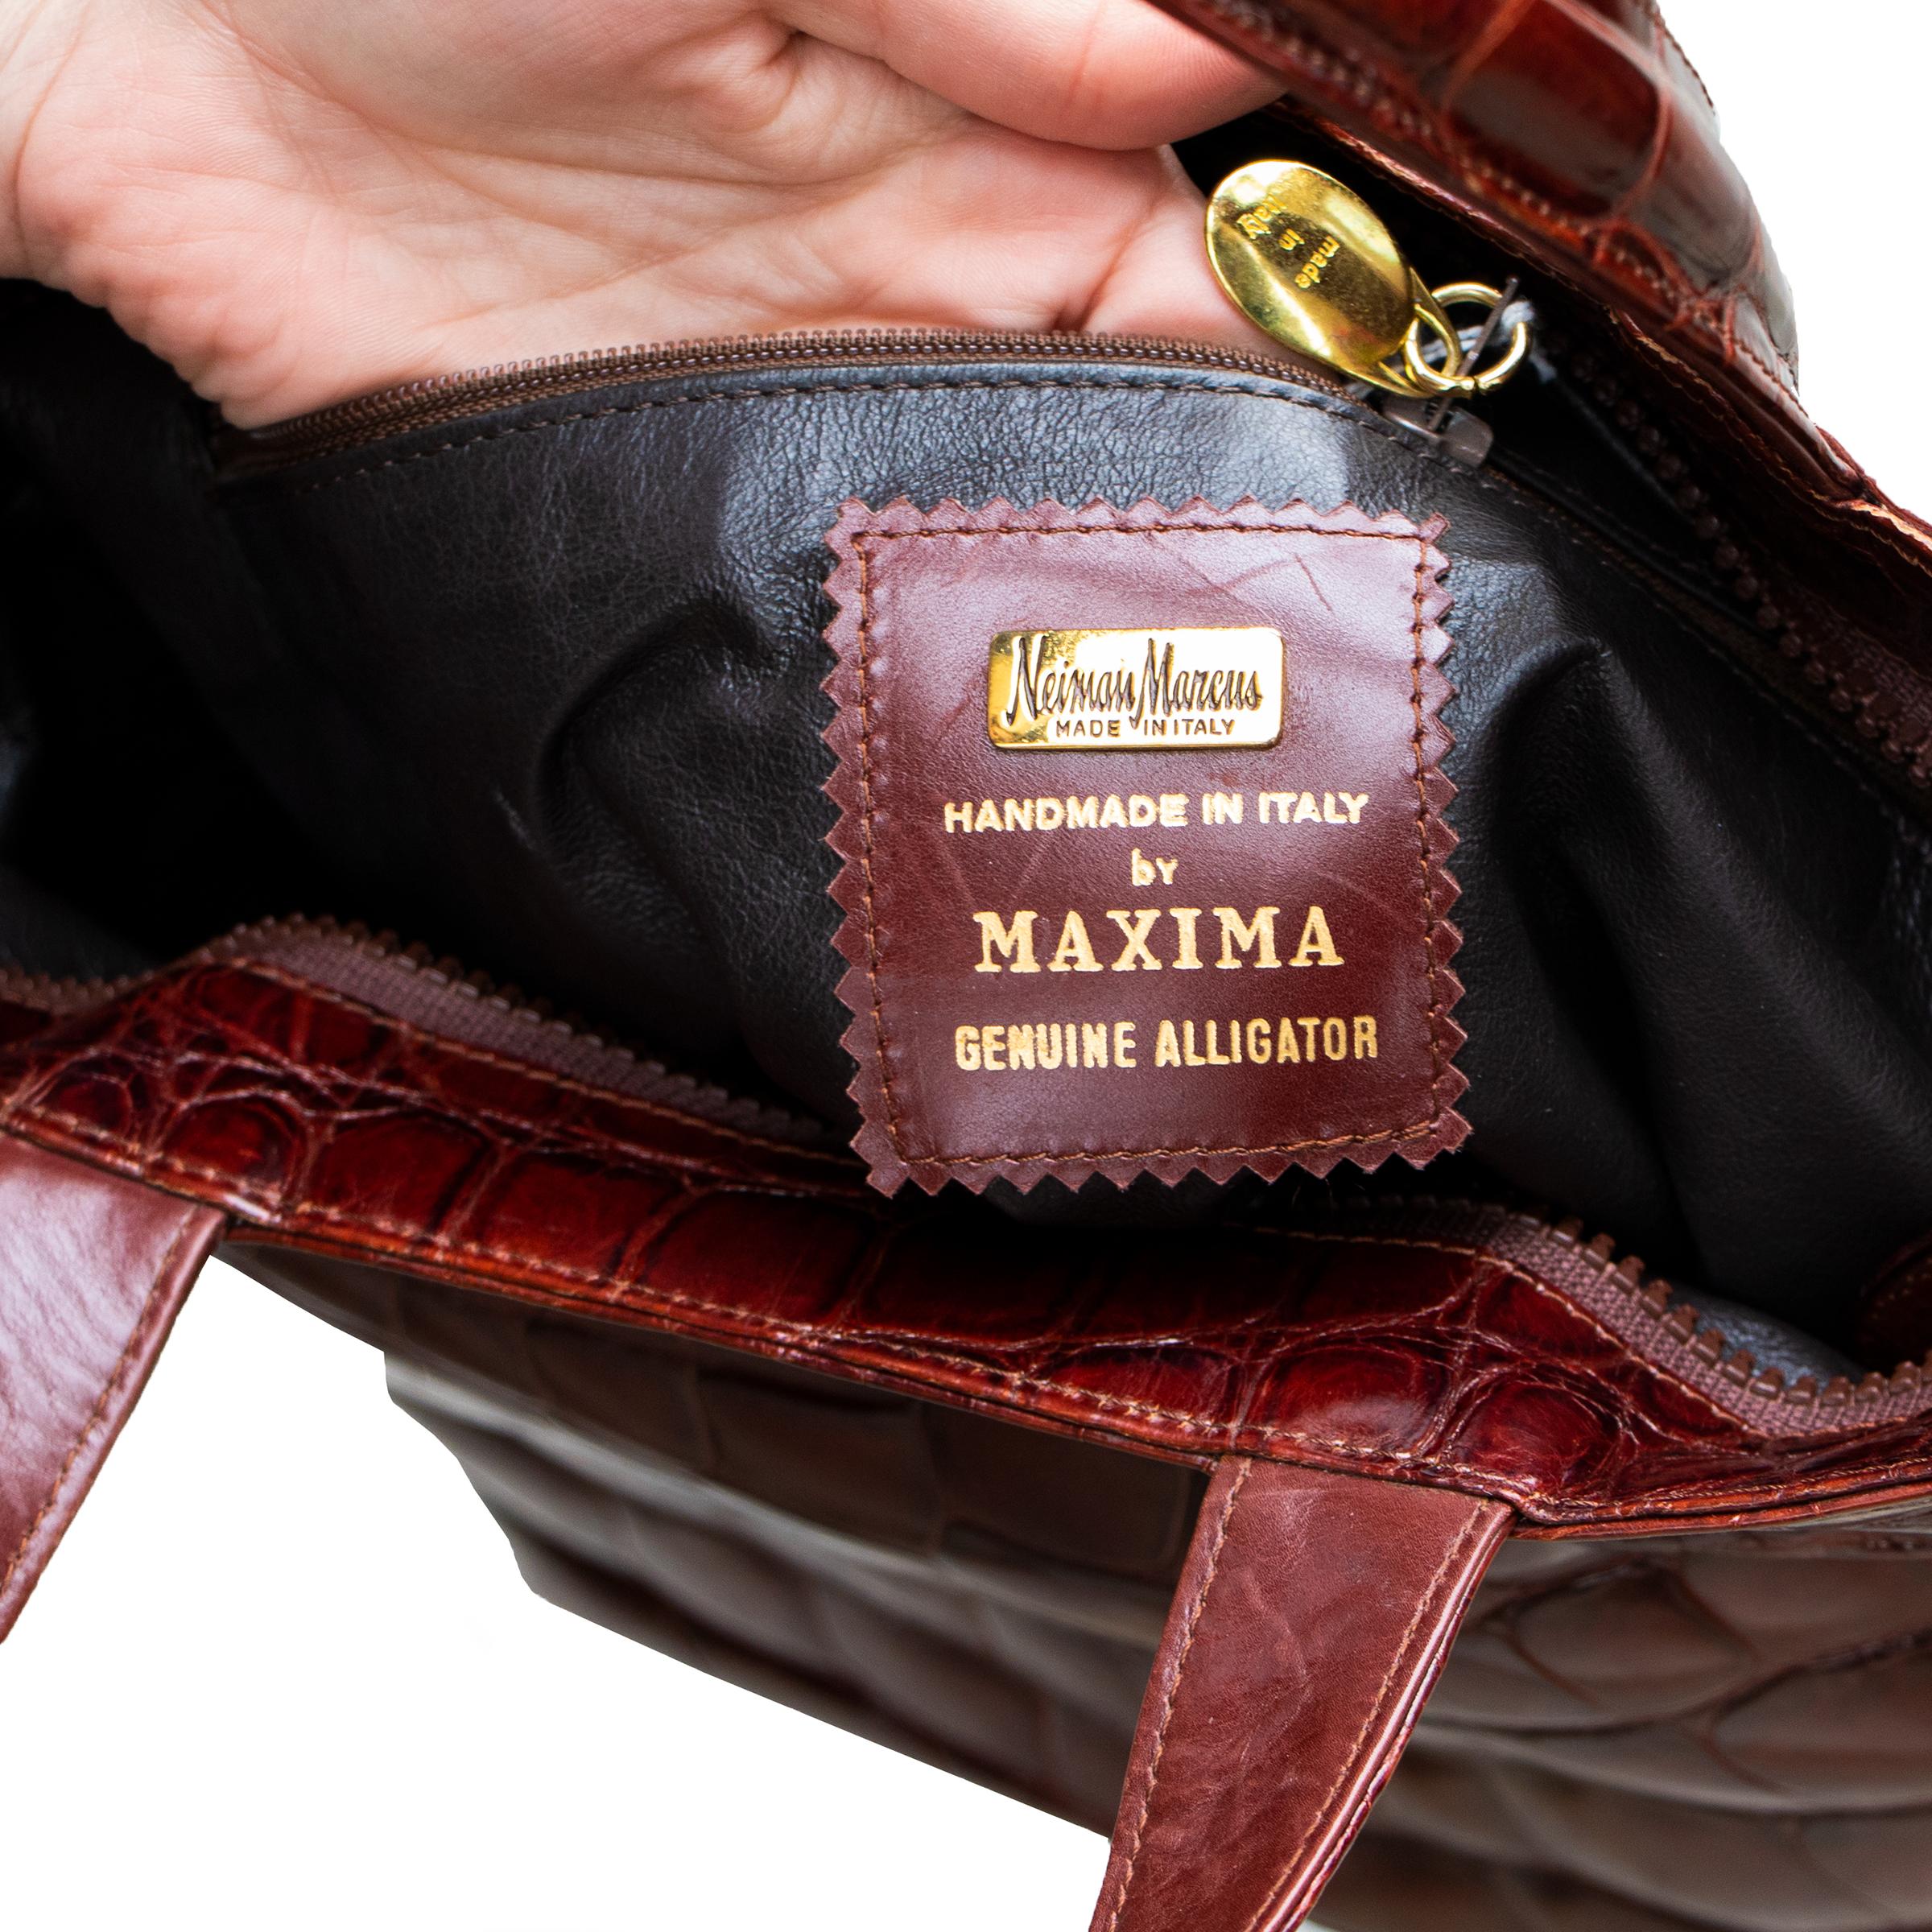 Fabriqué à la main à Milan, en Italie, ce sac à main en alligator véritable brun rougeâtre comporte une grande poche principale à fermeture éclair et une petite poche latérale supplémentaire à fermeture éclair. La fermeture de la poche principale